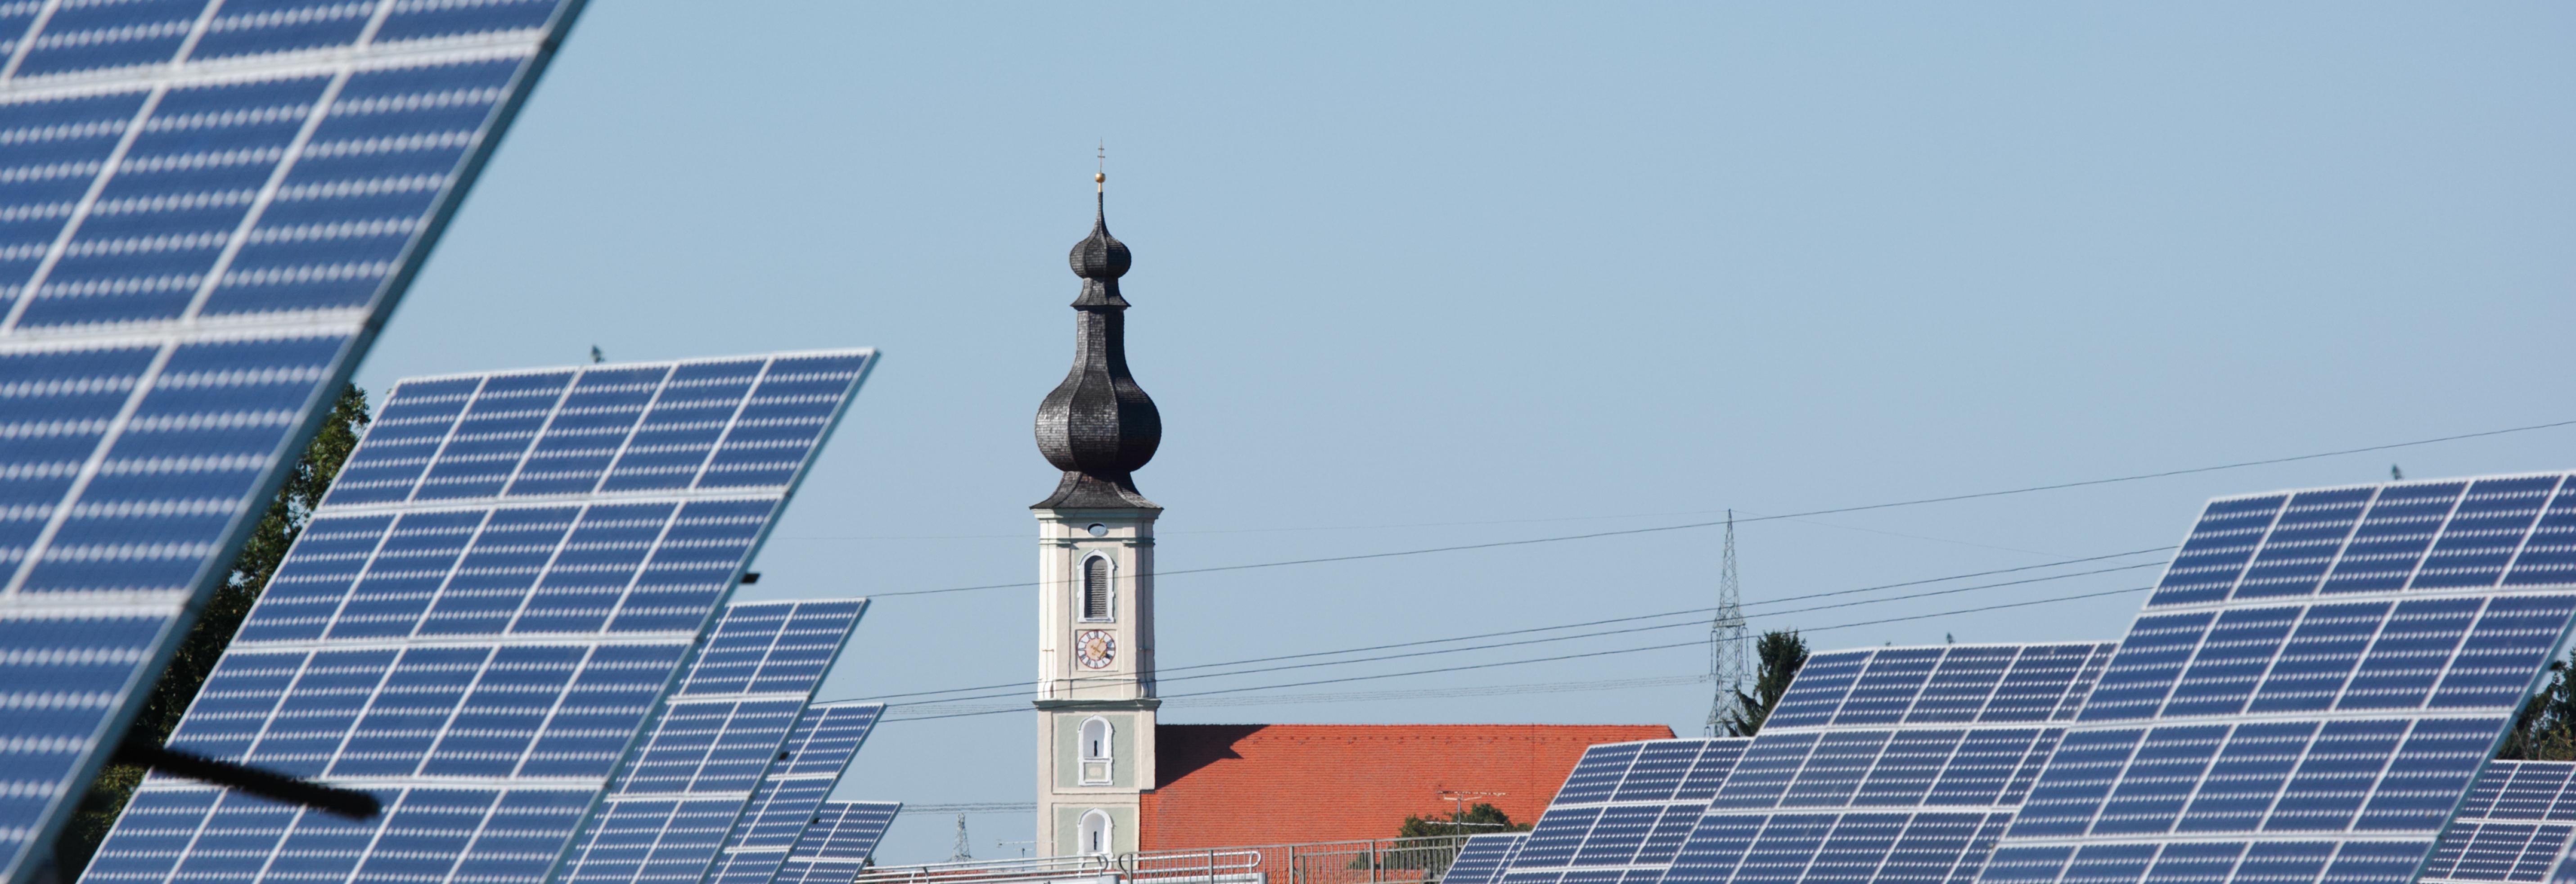 Photovoltaik und Denkmalschutz